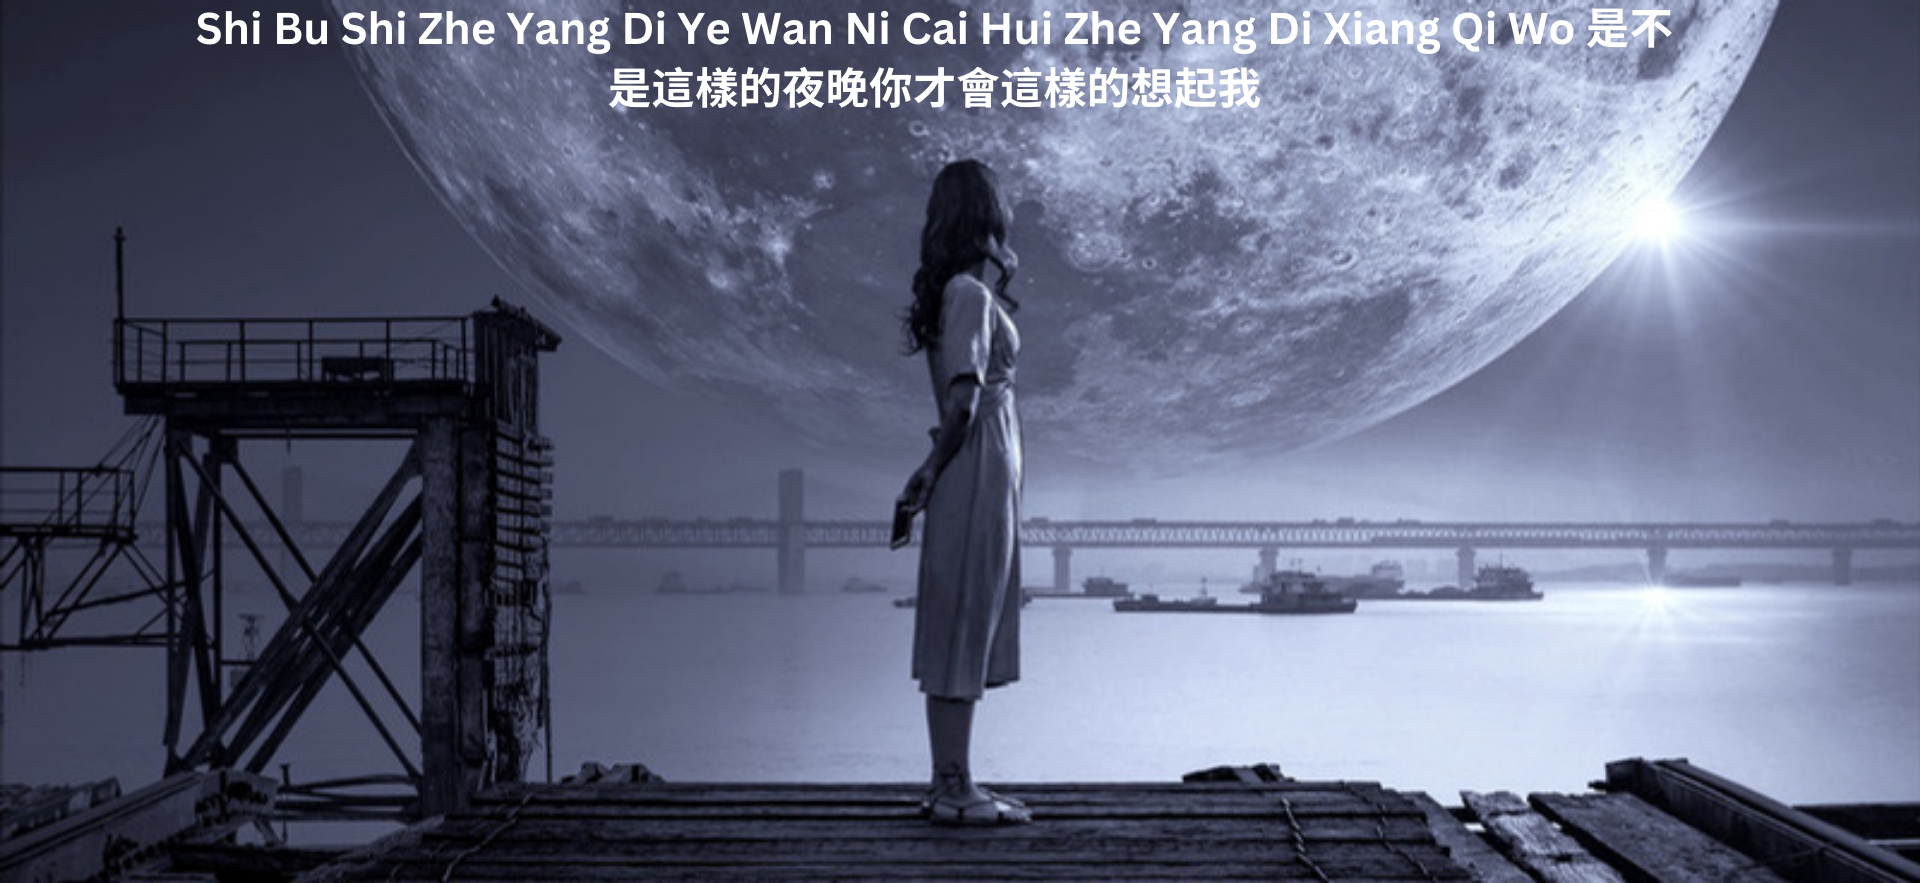 Shi Bu Shi Zhe Yang Di Ye Wan Ni Cai Hui Zhe Yang Di Xiang Qi Wo 是不是這樣的夜晚你才會這樣的想起我